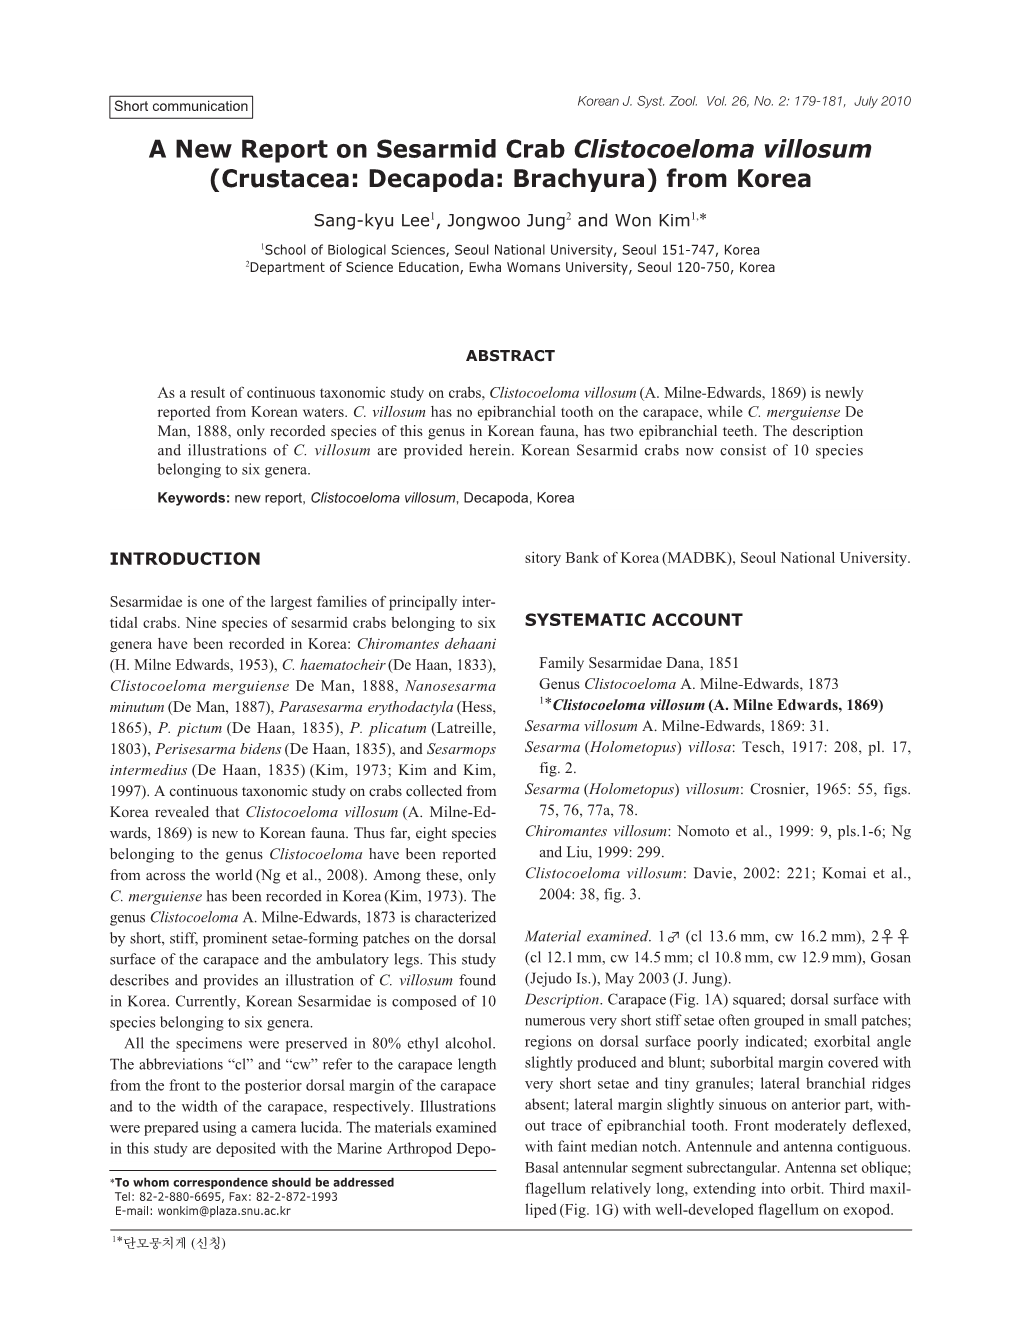 Crustacea: Decapoda: Brachyura) from Korea